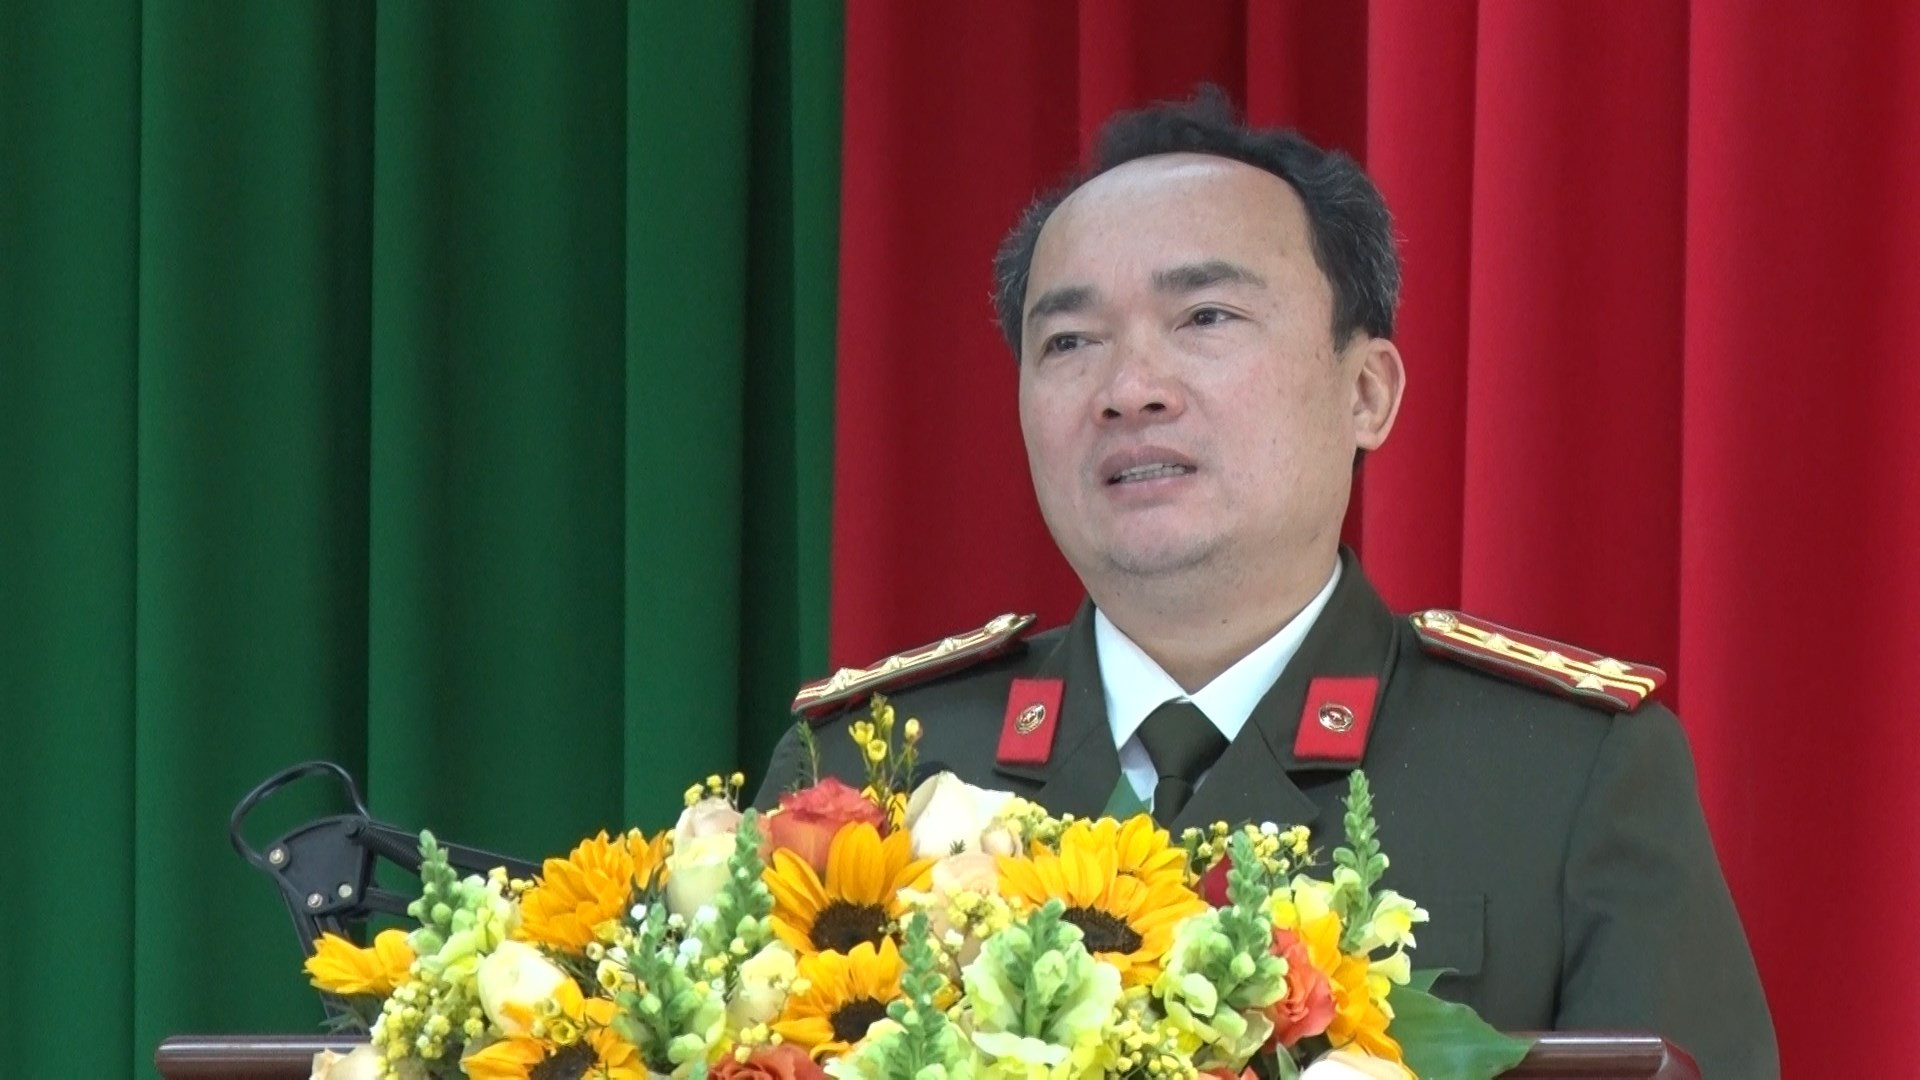 Đại tá Trương Minh Đương- Ủy viên Ban Thường vụ Tỉnh ủy, Giám đốc Công an tỉnh Lâm Đồng phát biểu chỉ đạo tại Hội nghị.